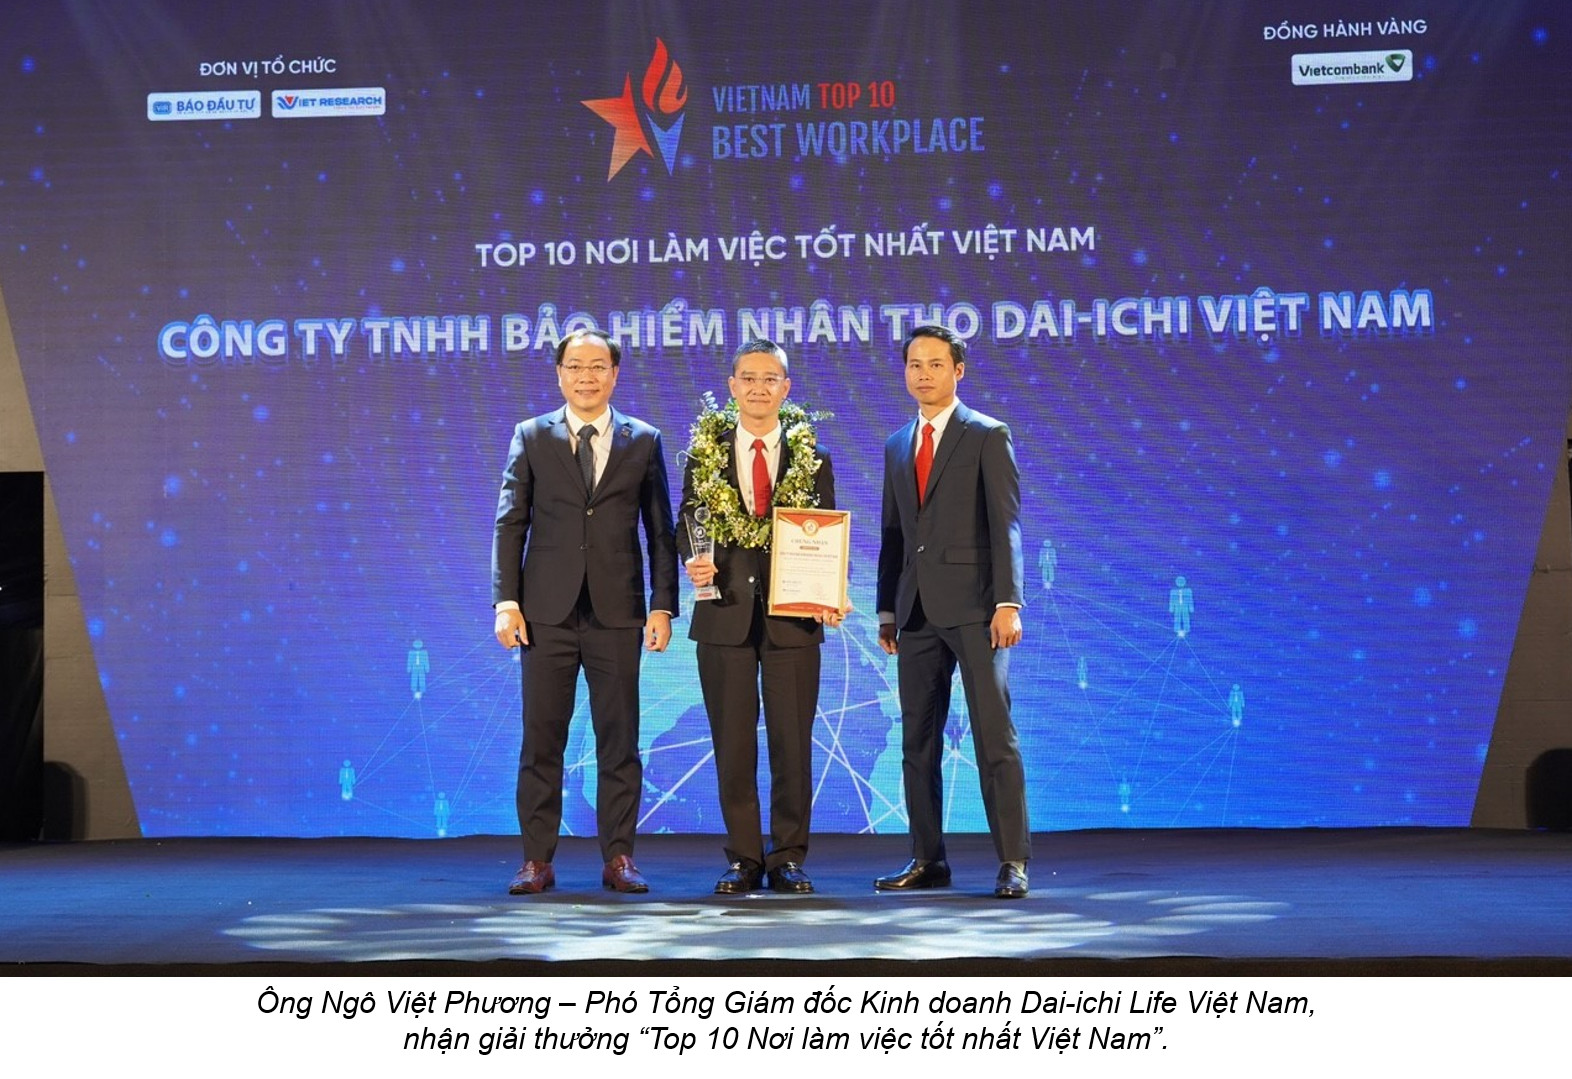 Dai-ichi Life Việt Nam được vinh danh trong Top 4 Nơi làm việc tốt nhất Việt Nam – Ngành Bảo hiểm